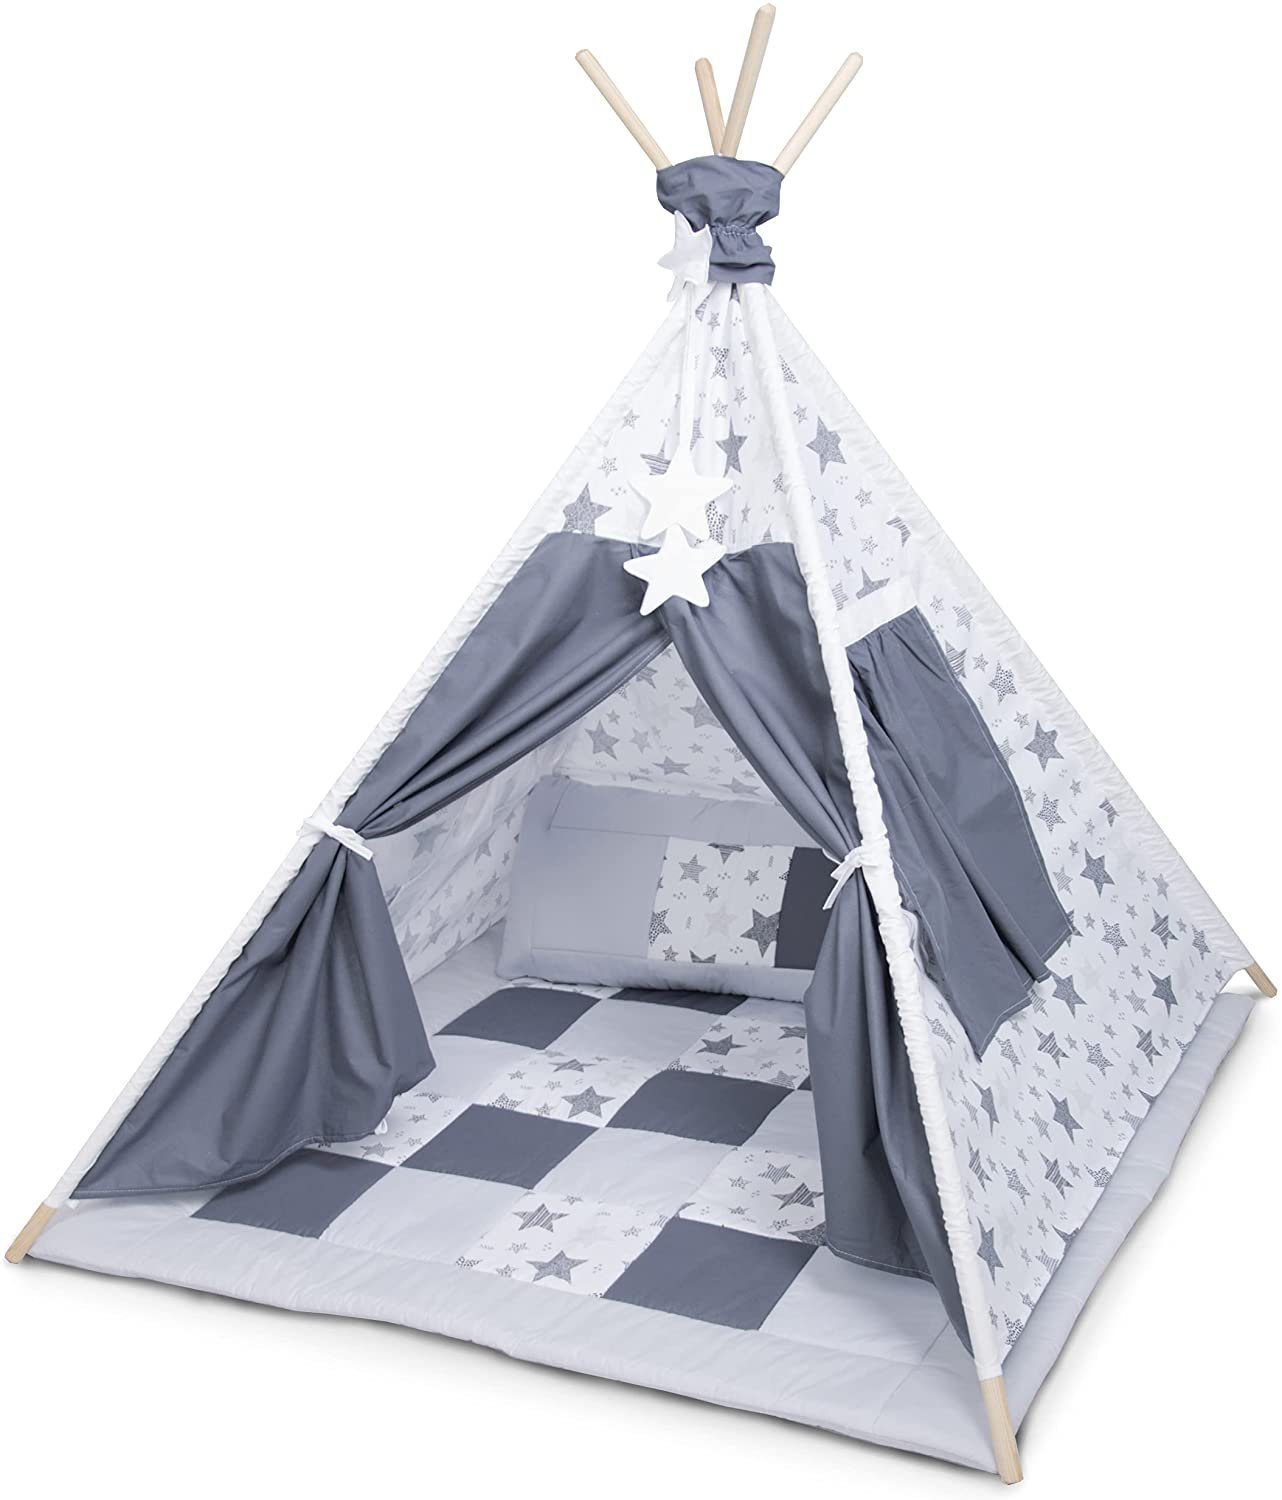 Spielzelt mit der Tipidecke und Kissen Amilian® Tipi Spielzelt Zelt für Kinder T40 